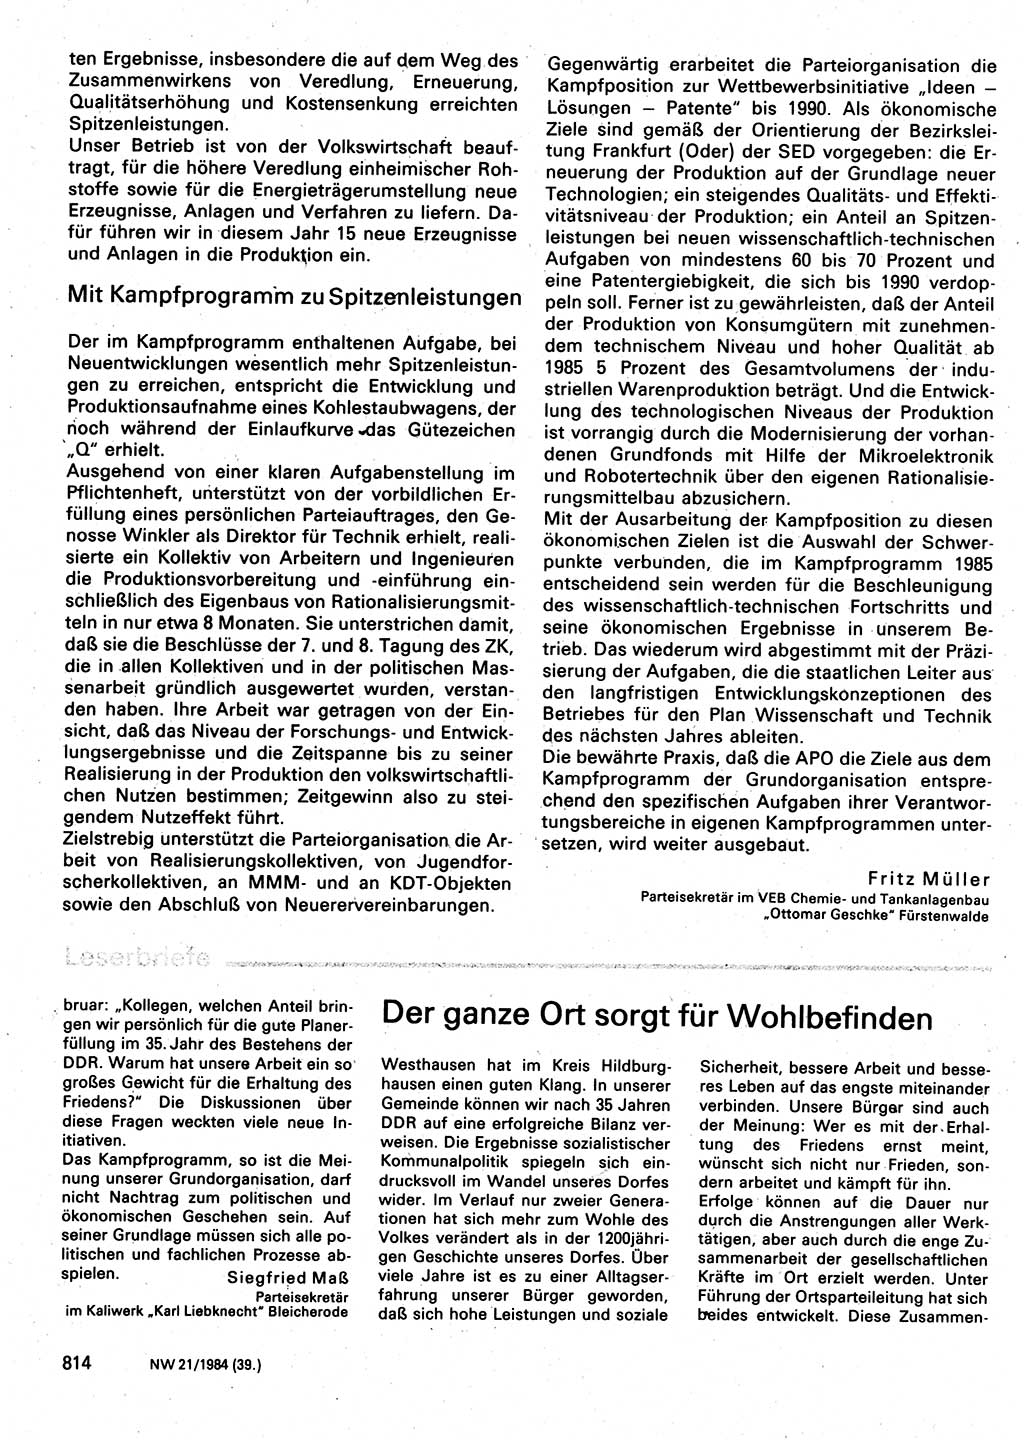 Neuer Weg (NW), Organ des Zentralkomitees (ZK) der SED (Sozialistische Einheitspartei Deutschlands) für Fragen des Parteilebens, 39. Jahrgang [Deutsche Demokratische Republik (DDR)] 1984, Seite 814 (NW ZK SED DDR 1984, S. 814)